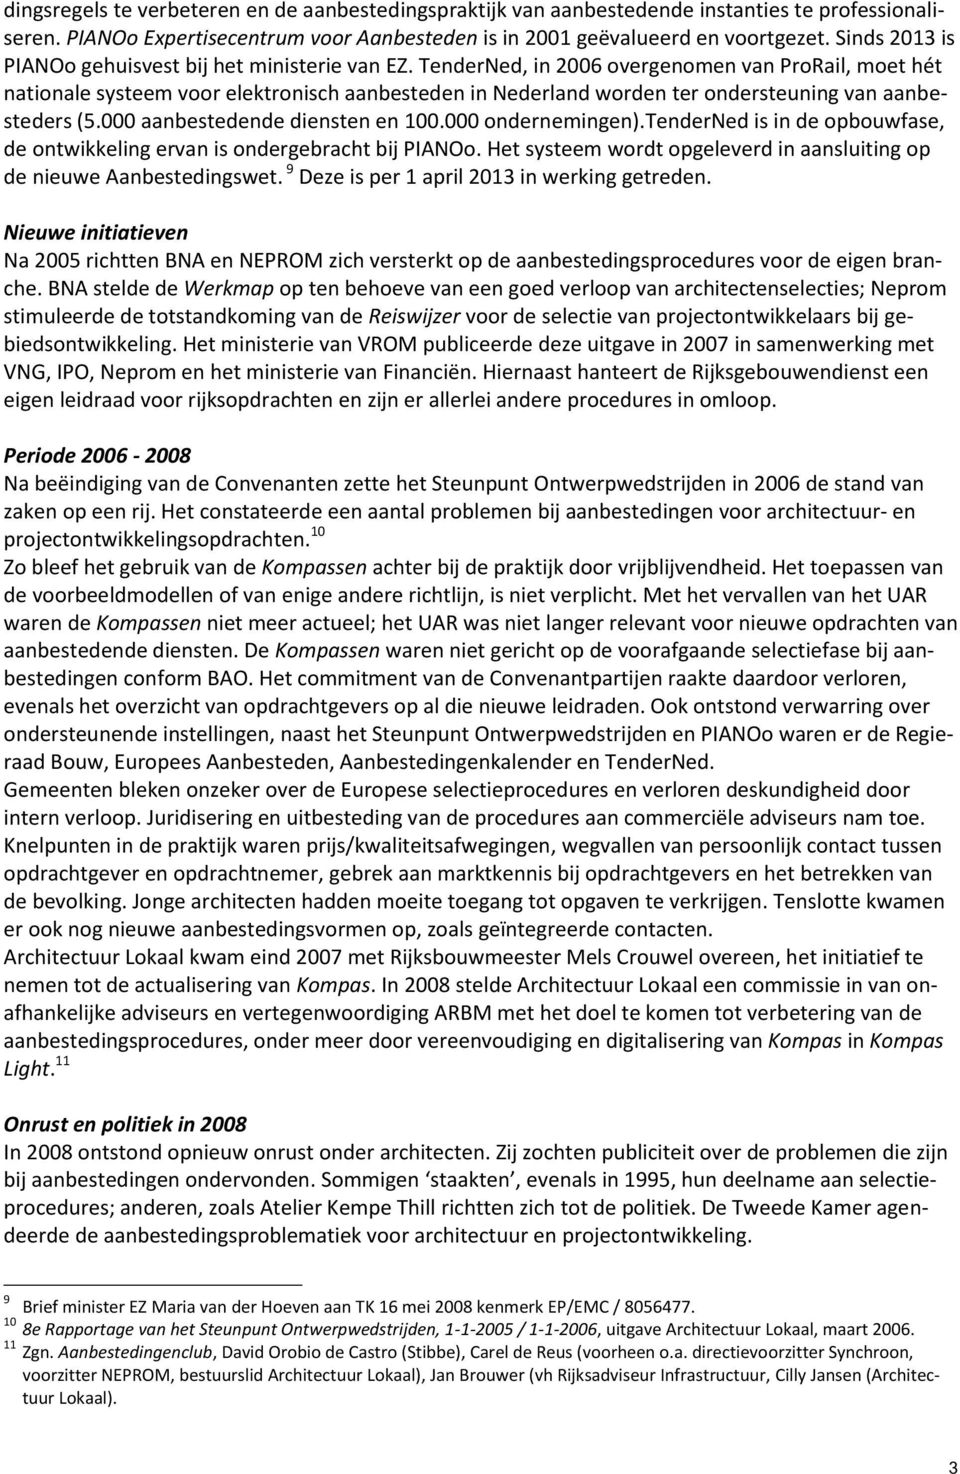 TenderNed, in 2006 overgenomen van ProRail, moet hét nationale systeem voor elektronisch aanbesteden in Nederland worden ter ondersteuning van aanbesteders (5.000 aanbestedende diensten en 100.